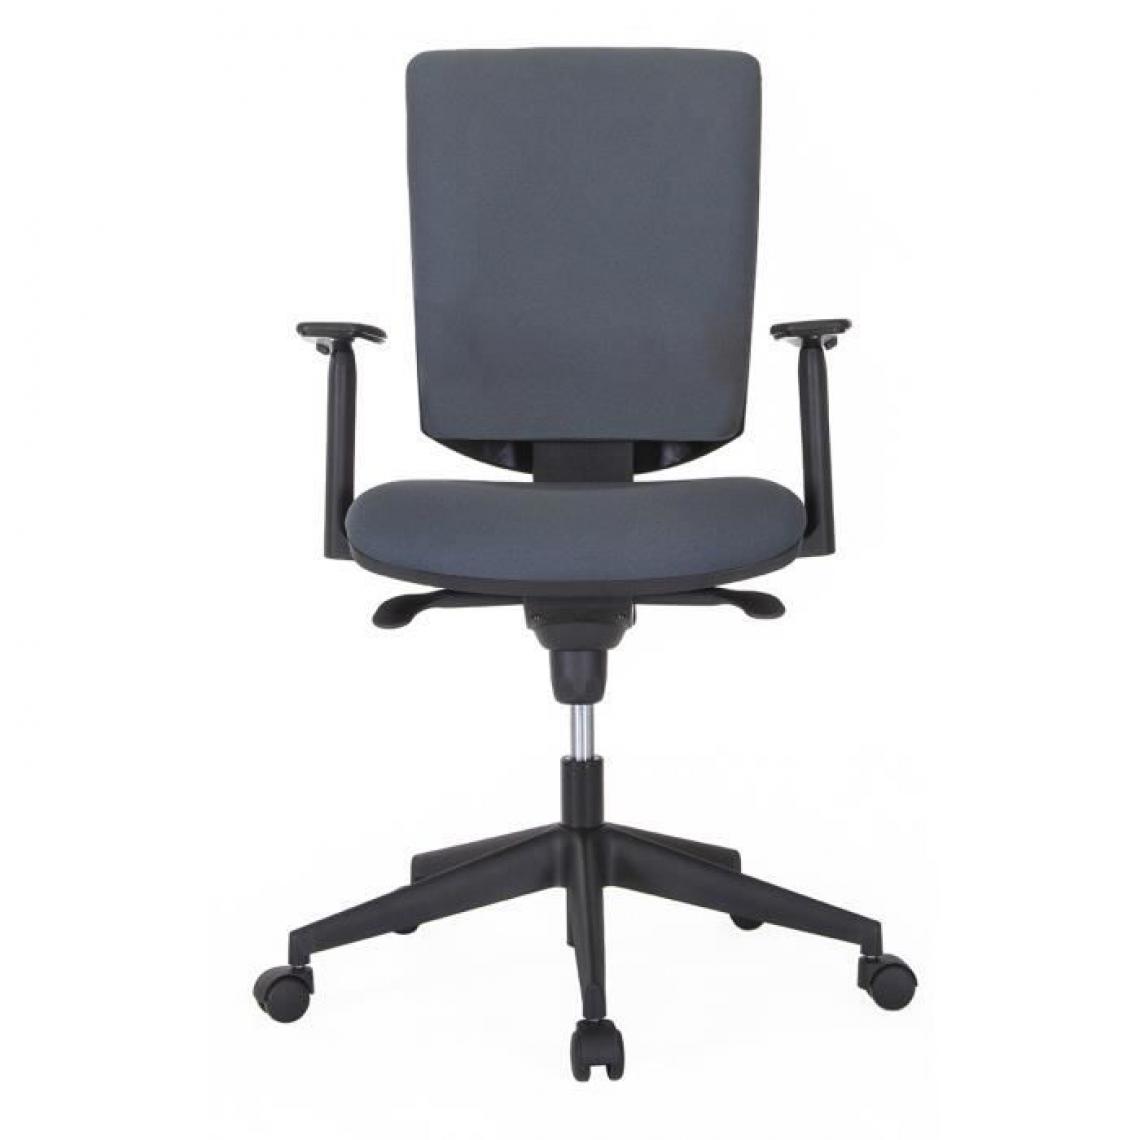 Cstore - HASHTAG Chaise de bureau - Tissu Gris - L 69 x P 69 x H 106 cm - Chaises